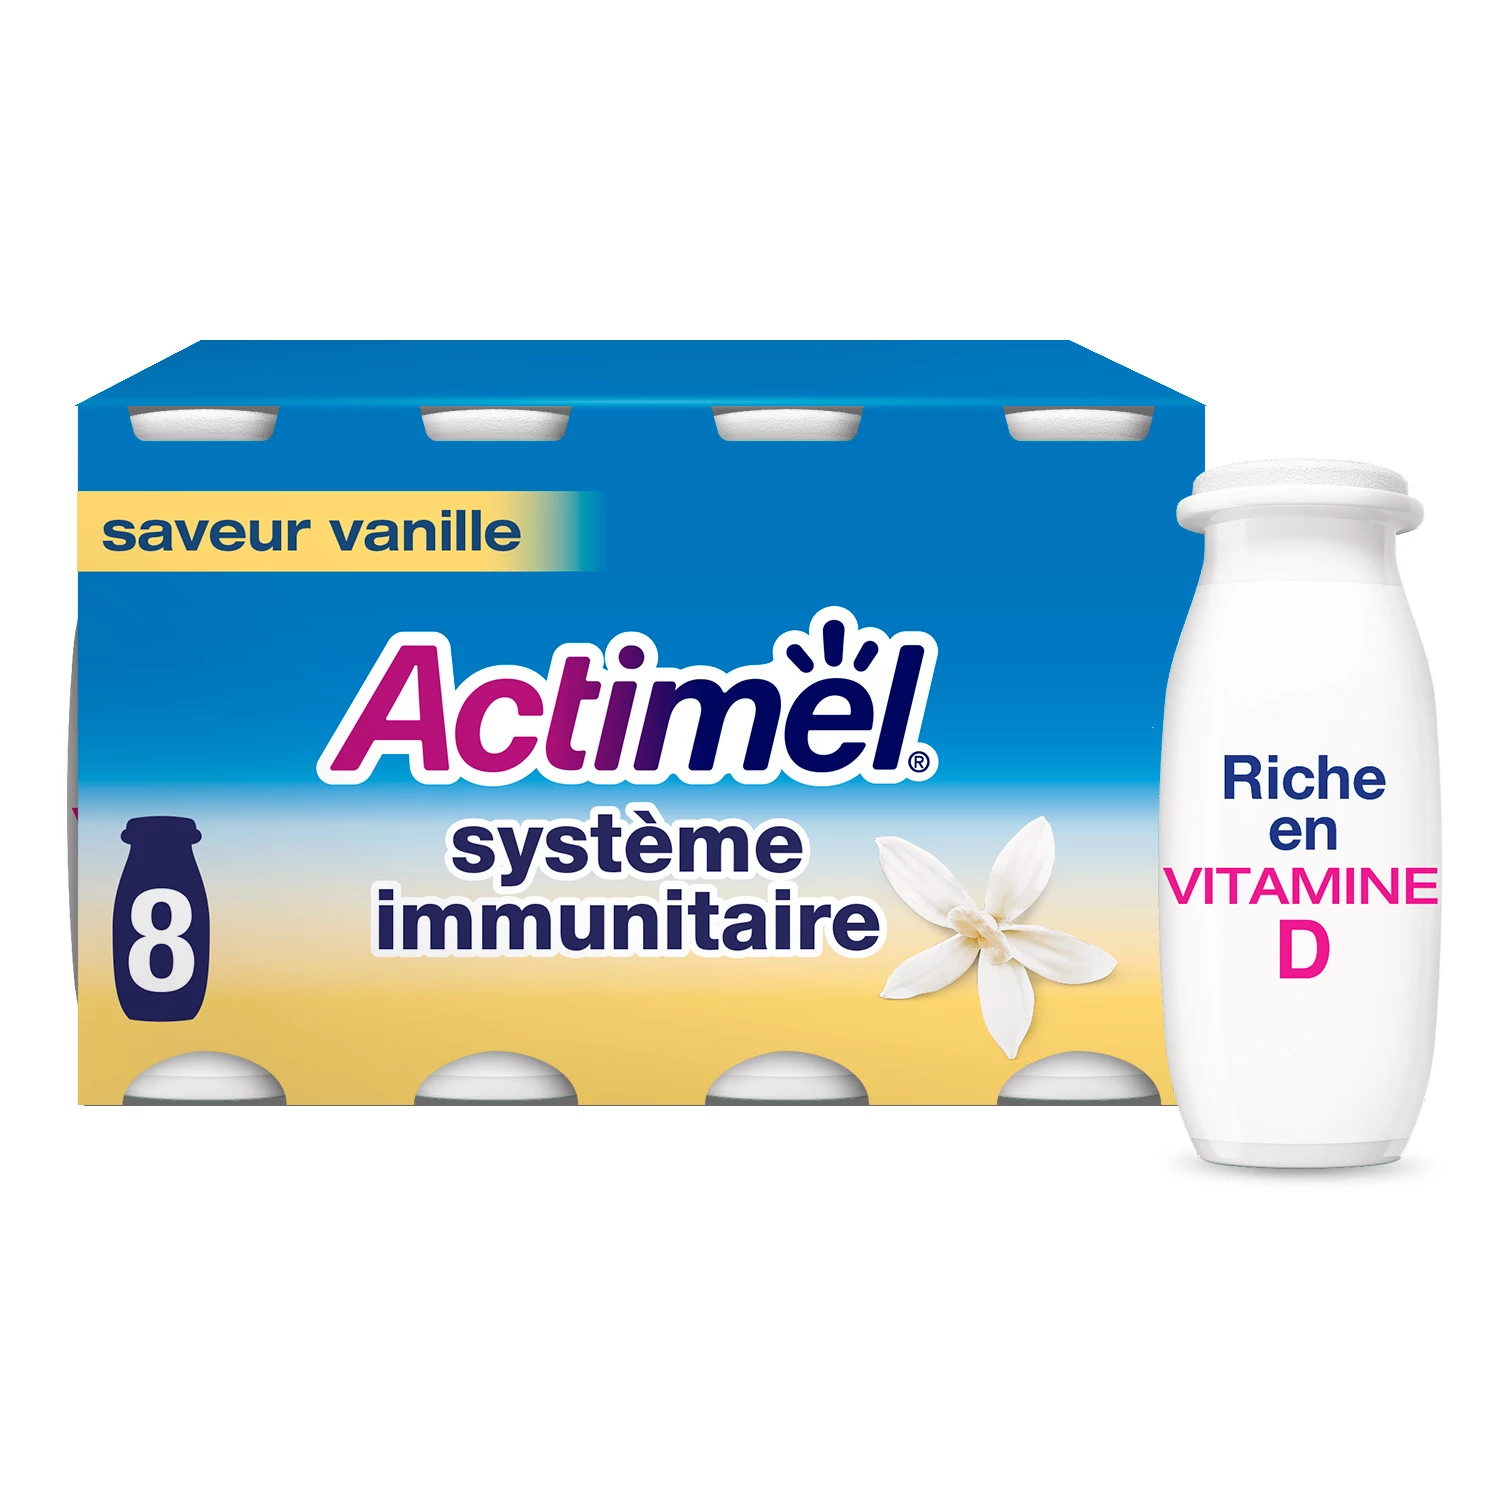 8 Yaourt à boire vanille - ACTIMEL